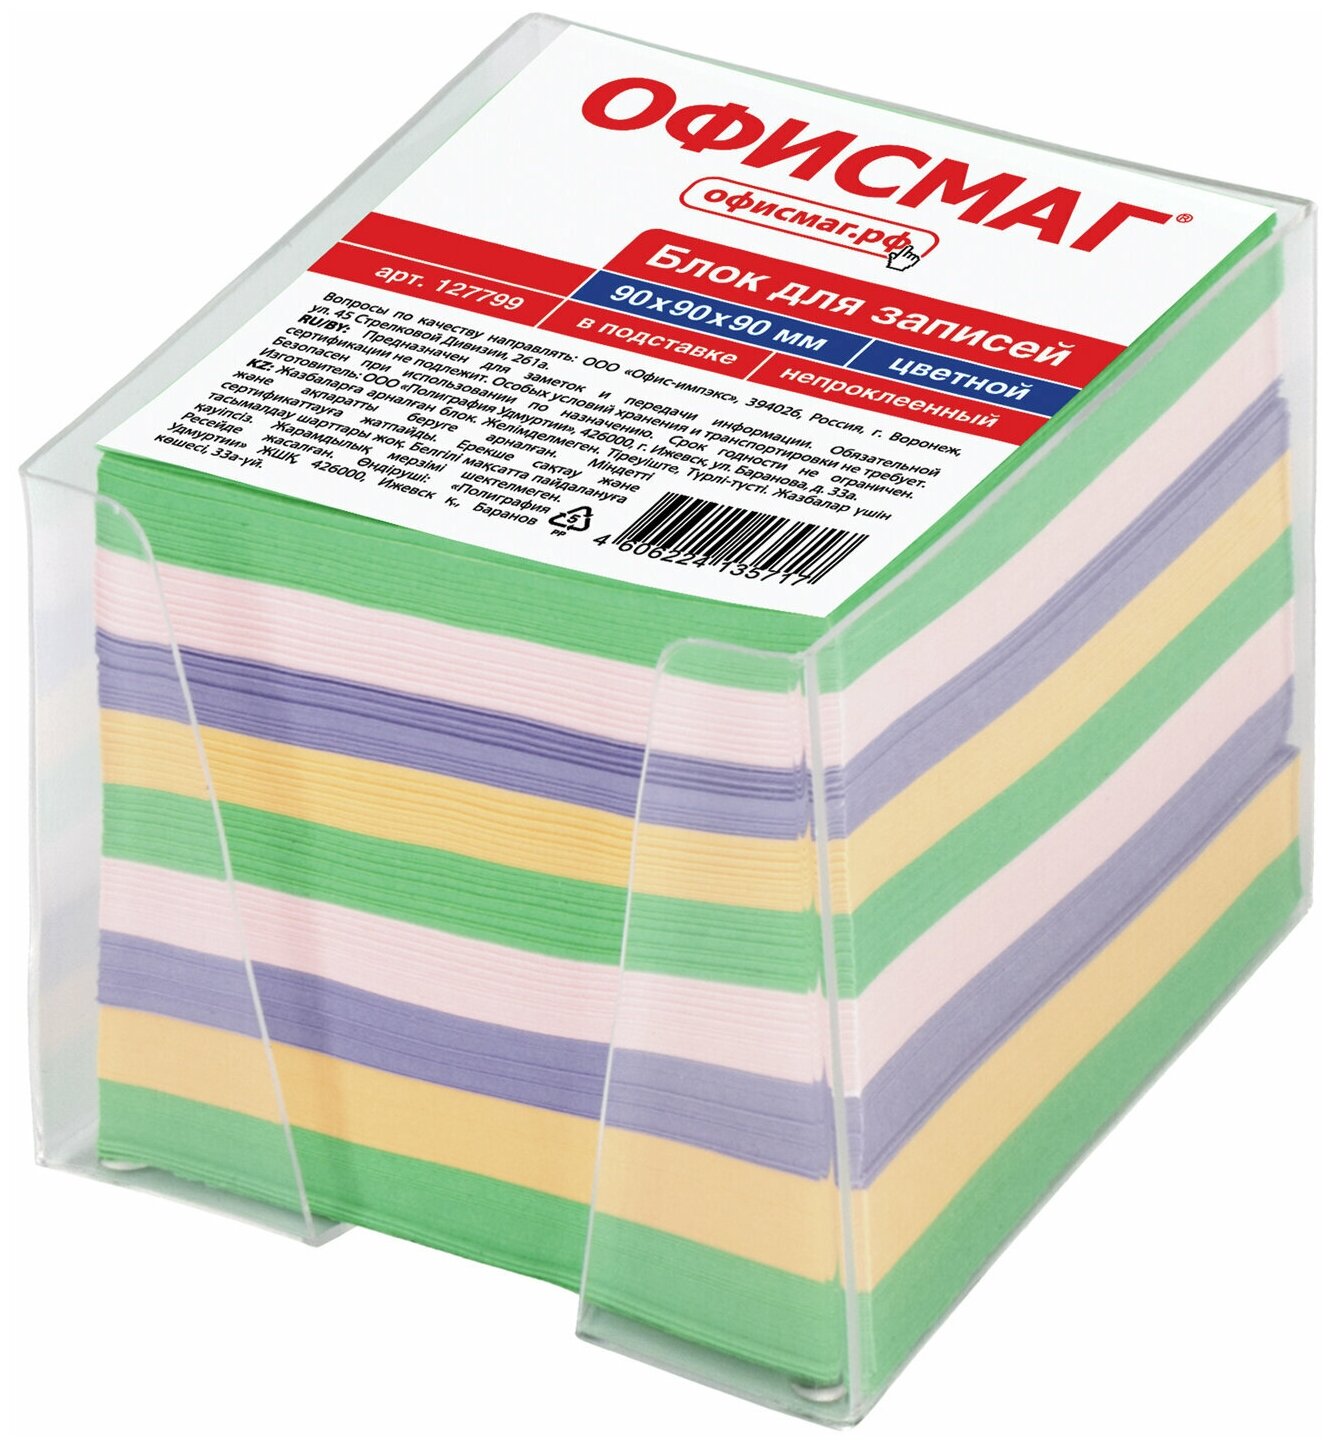 Блок для записей офисмаг в подставке прозрачной, куб 9*9*9 см, цветной, 127799, - Комплект 5 шт.(компл.)